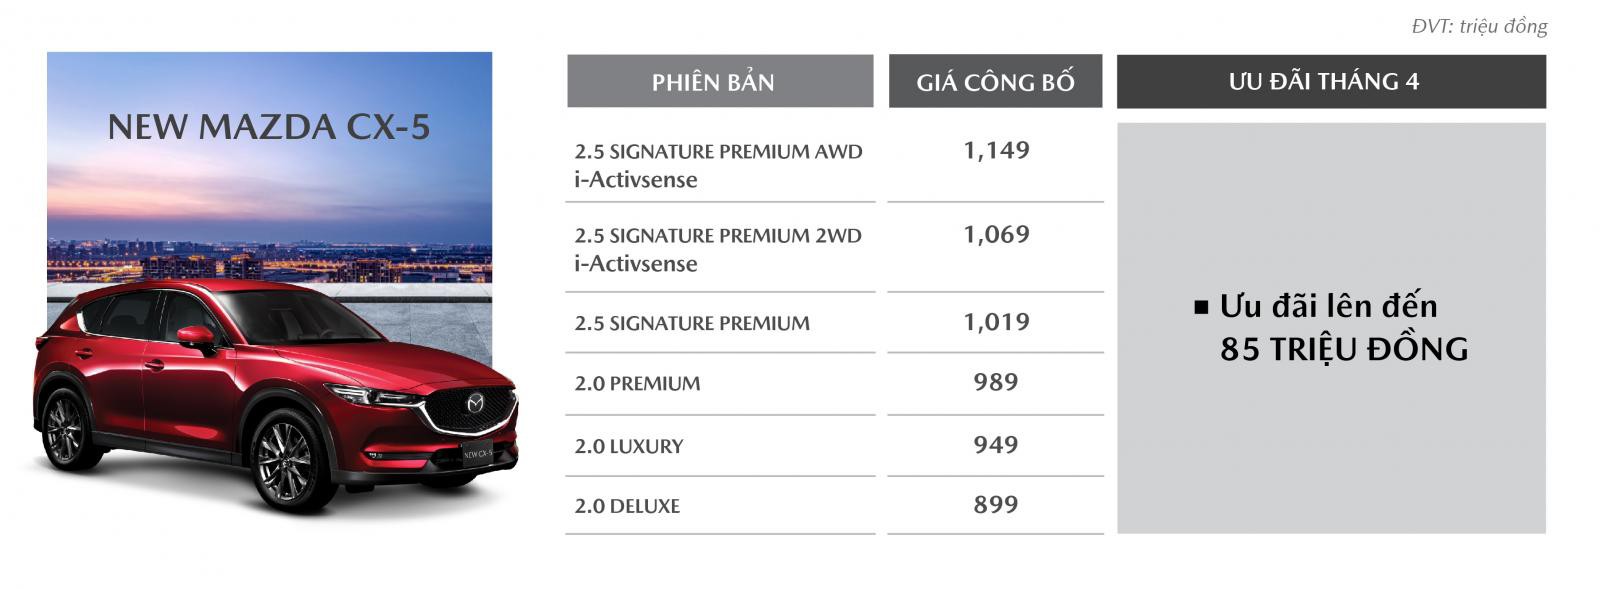 Mazda CX-5 ưu đãi đến 85 triệu đồng